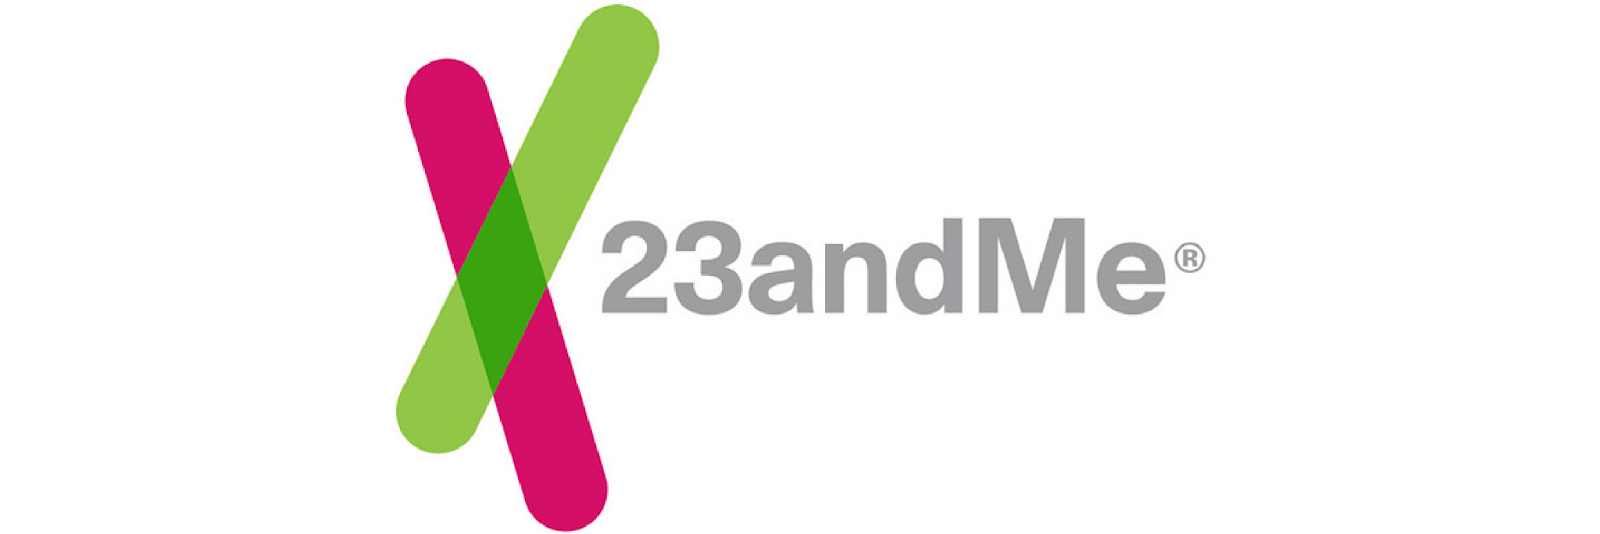 23andMe Company Logo